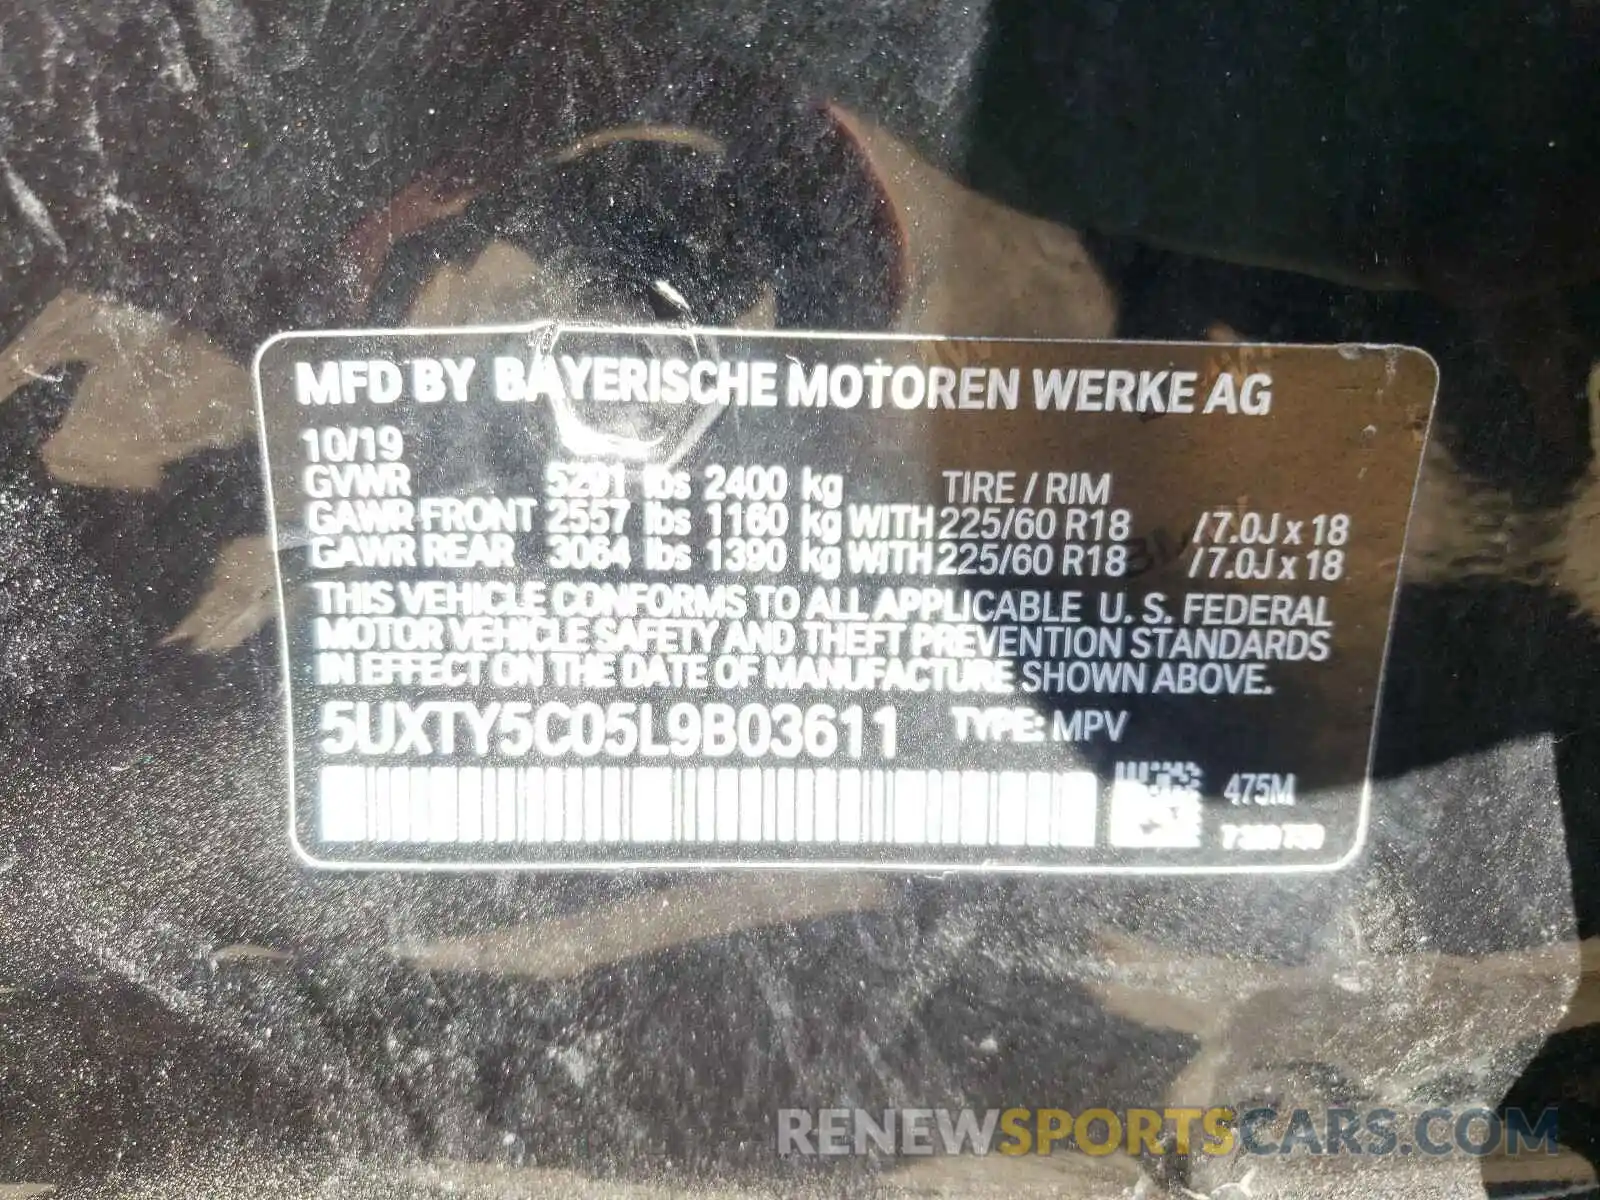 10 Photograph of a damaged car 5UXTY5C05L9B03611 BMW X3 2020